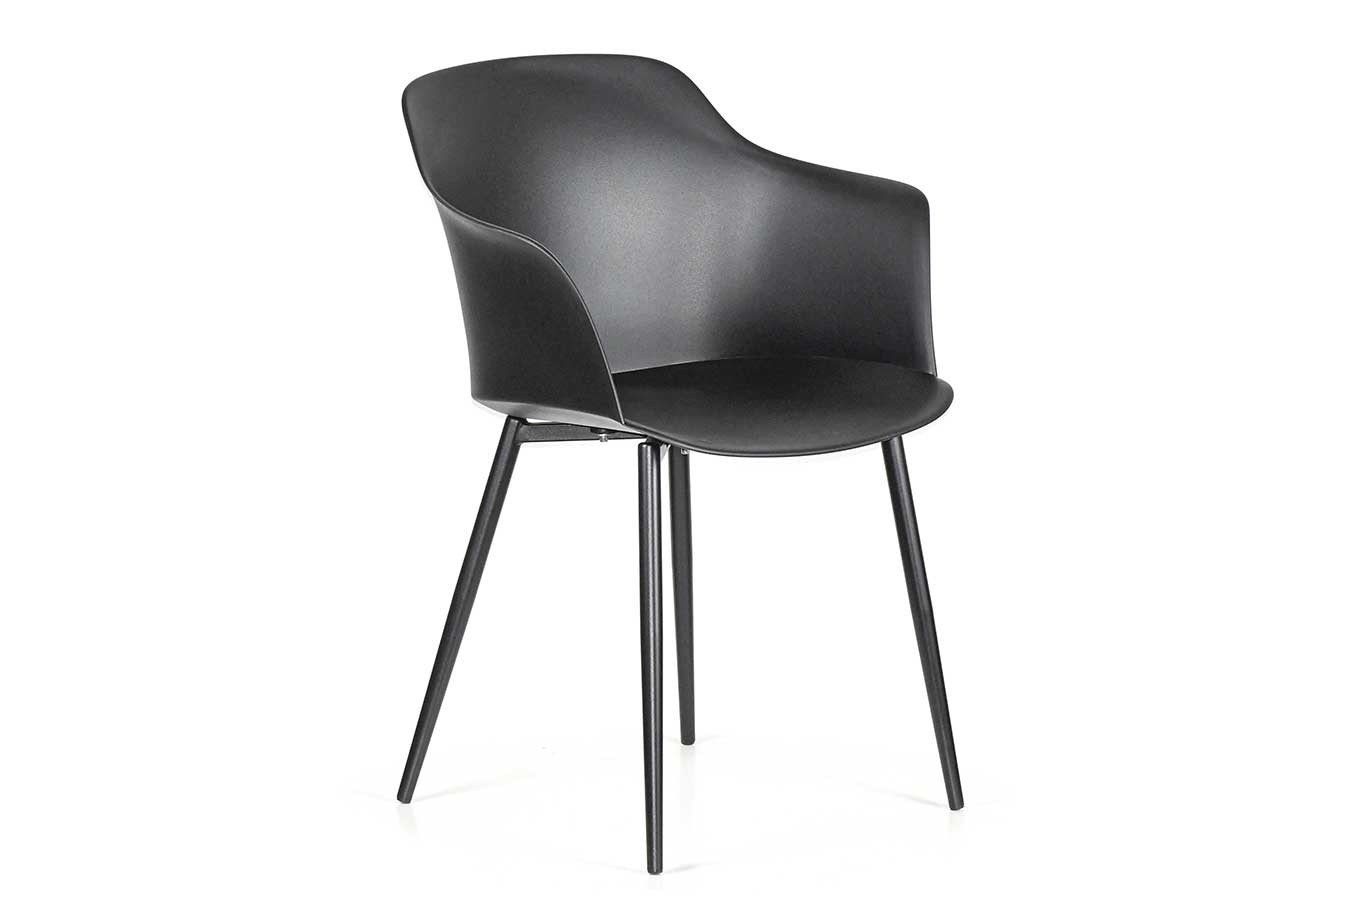 Armlehne mit pulver Designchair italienischer living Stuhl schwarz Blanchet daslagerhaus du